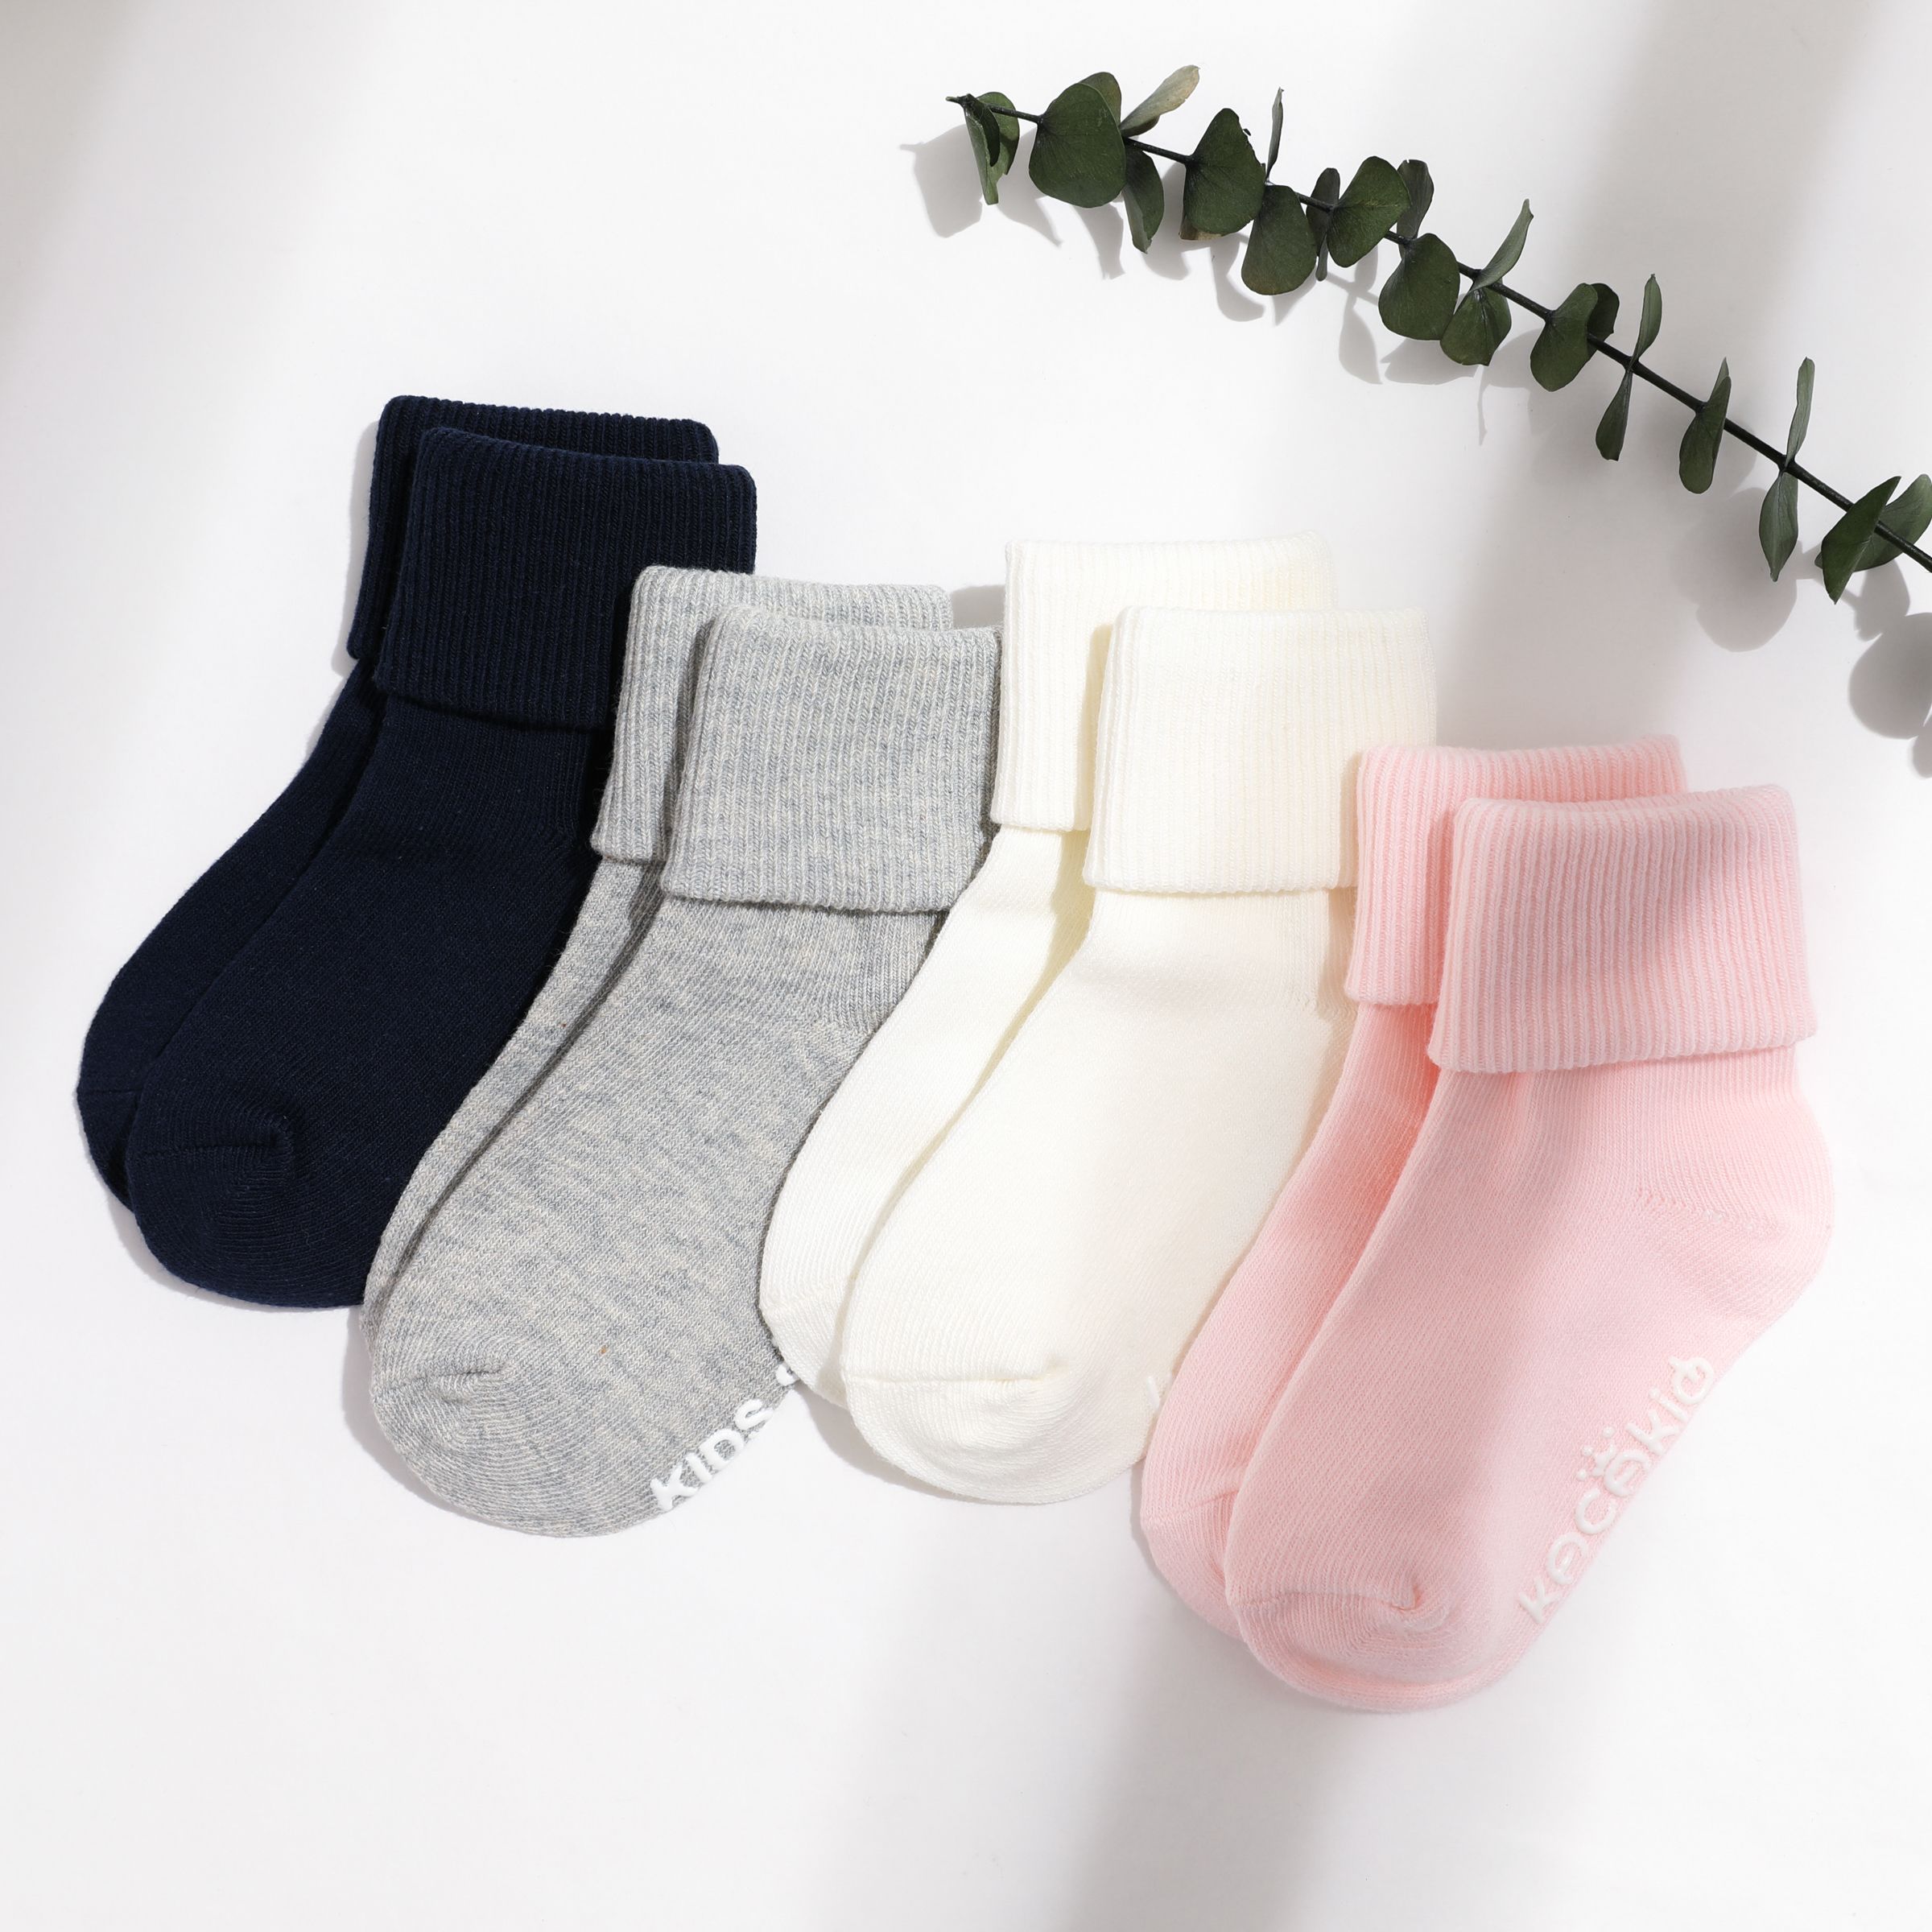 嬰兒/幼兒女孩/男孩夏季精梳棉純色可愛中小腿襪